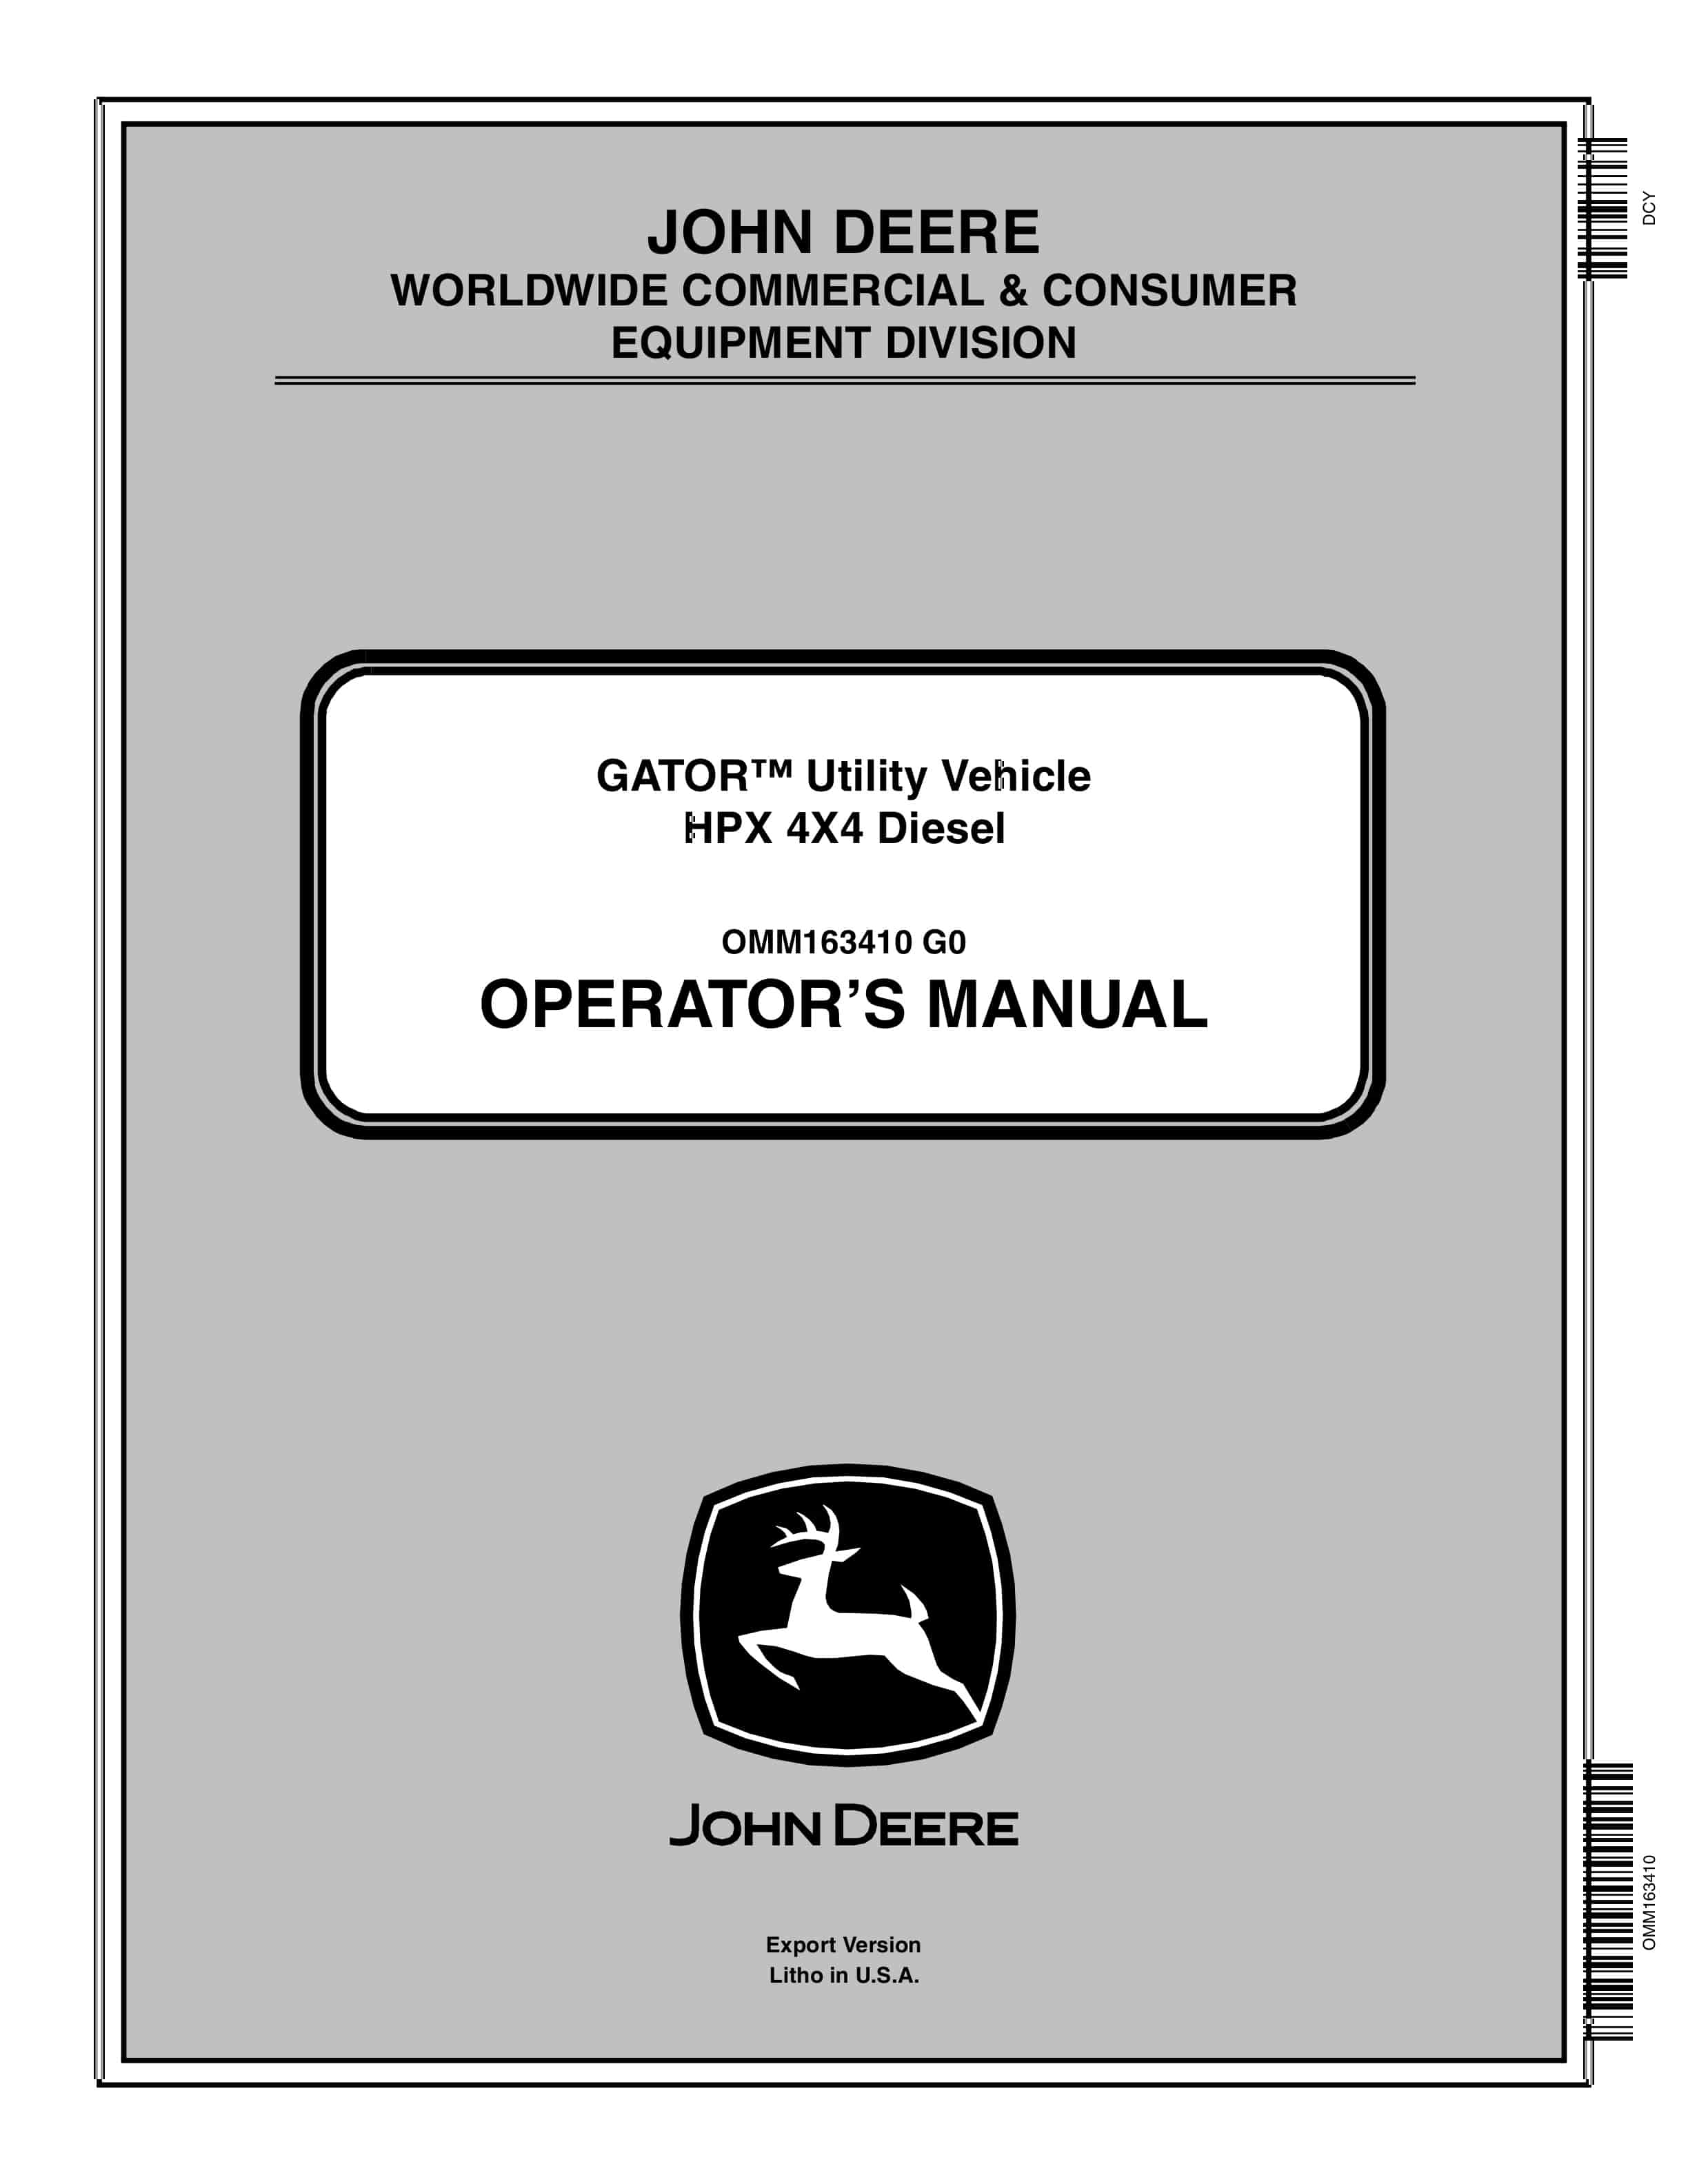 John Deere HPX 4X4 Diesel GATOR Utility Vehicles Operator Manual OMM163410 1